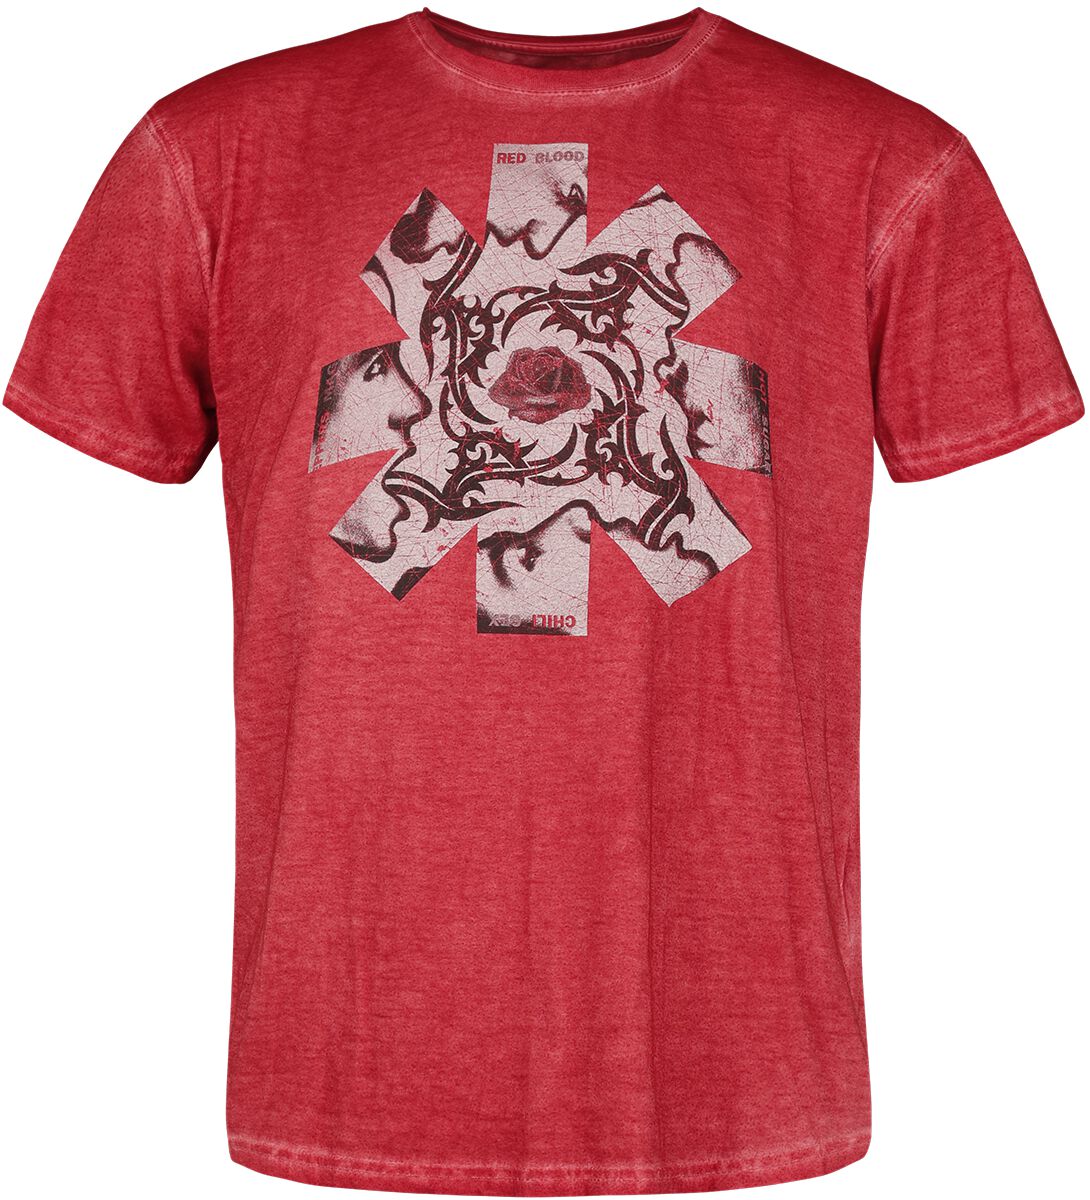 Red Hot Chili Peppers T-Shirt - Blood, Sugar, Sex, & Magik - S bis 3XL - für Männer - Größe XL - rot  - Lizenziertes Merchandise!